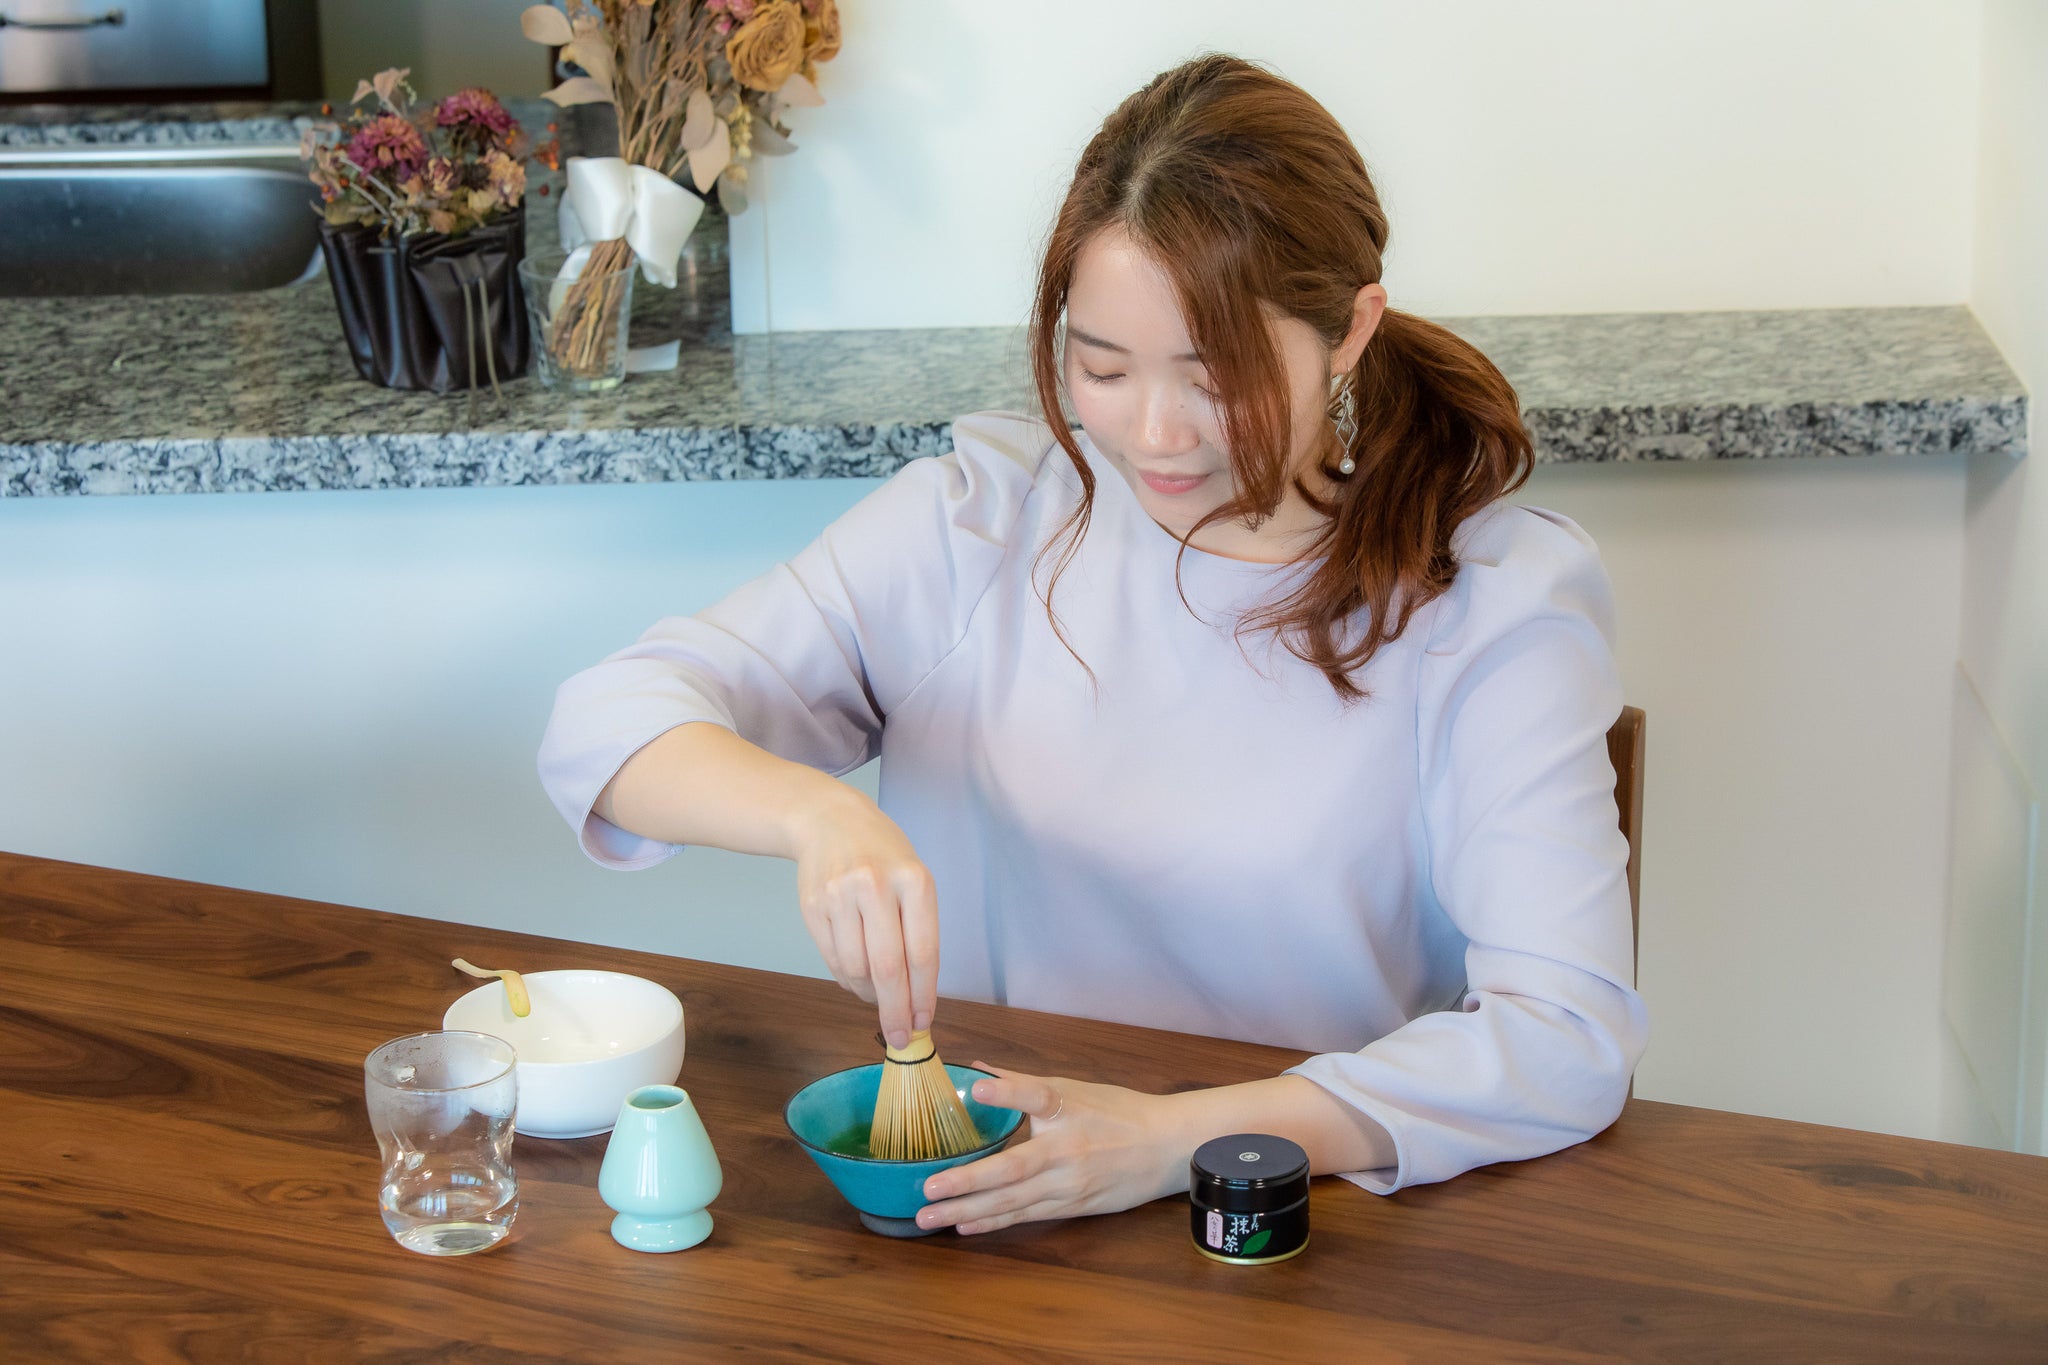 日本一の玉露の品質を誇る福岡 星野村より 可愛いらしいお抹茶キット アソビュー ギフト